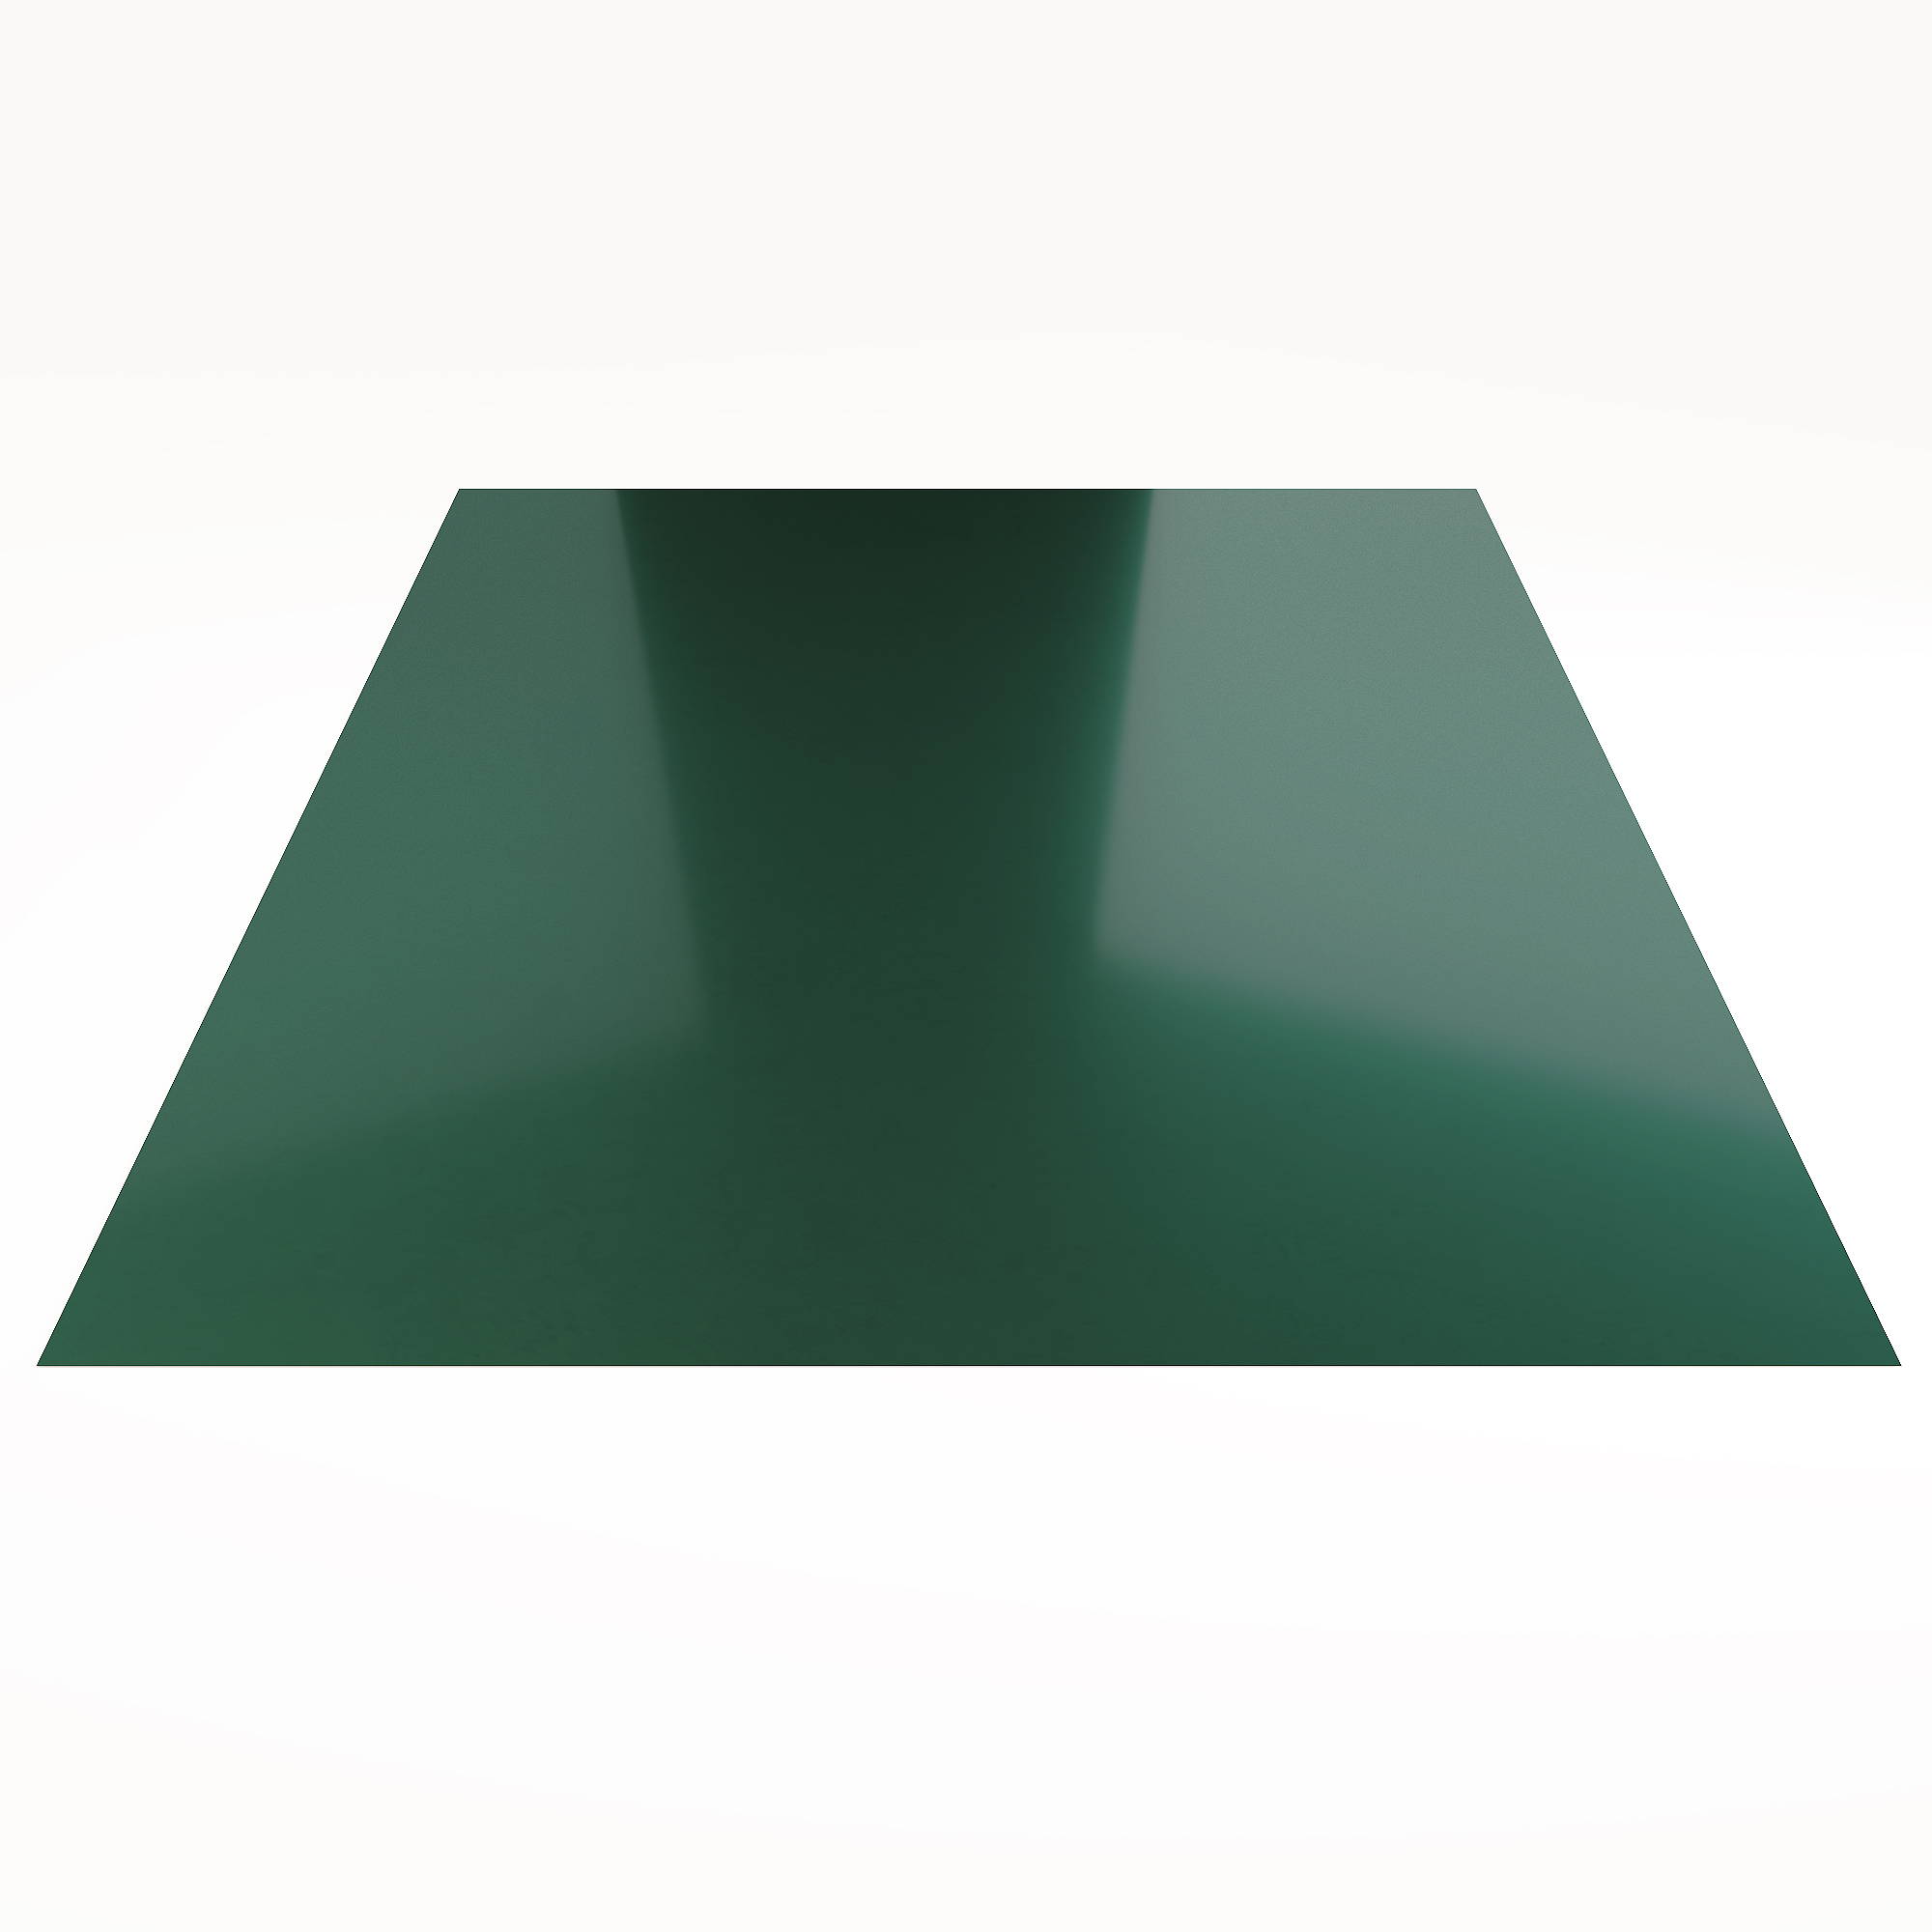 Гладкий лист Гладкий полиэстер RAL 6005 (Зелёный мох) 1800*1250*0,35 односторонний ламинированный